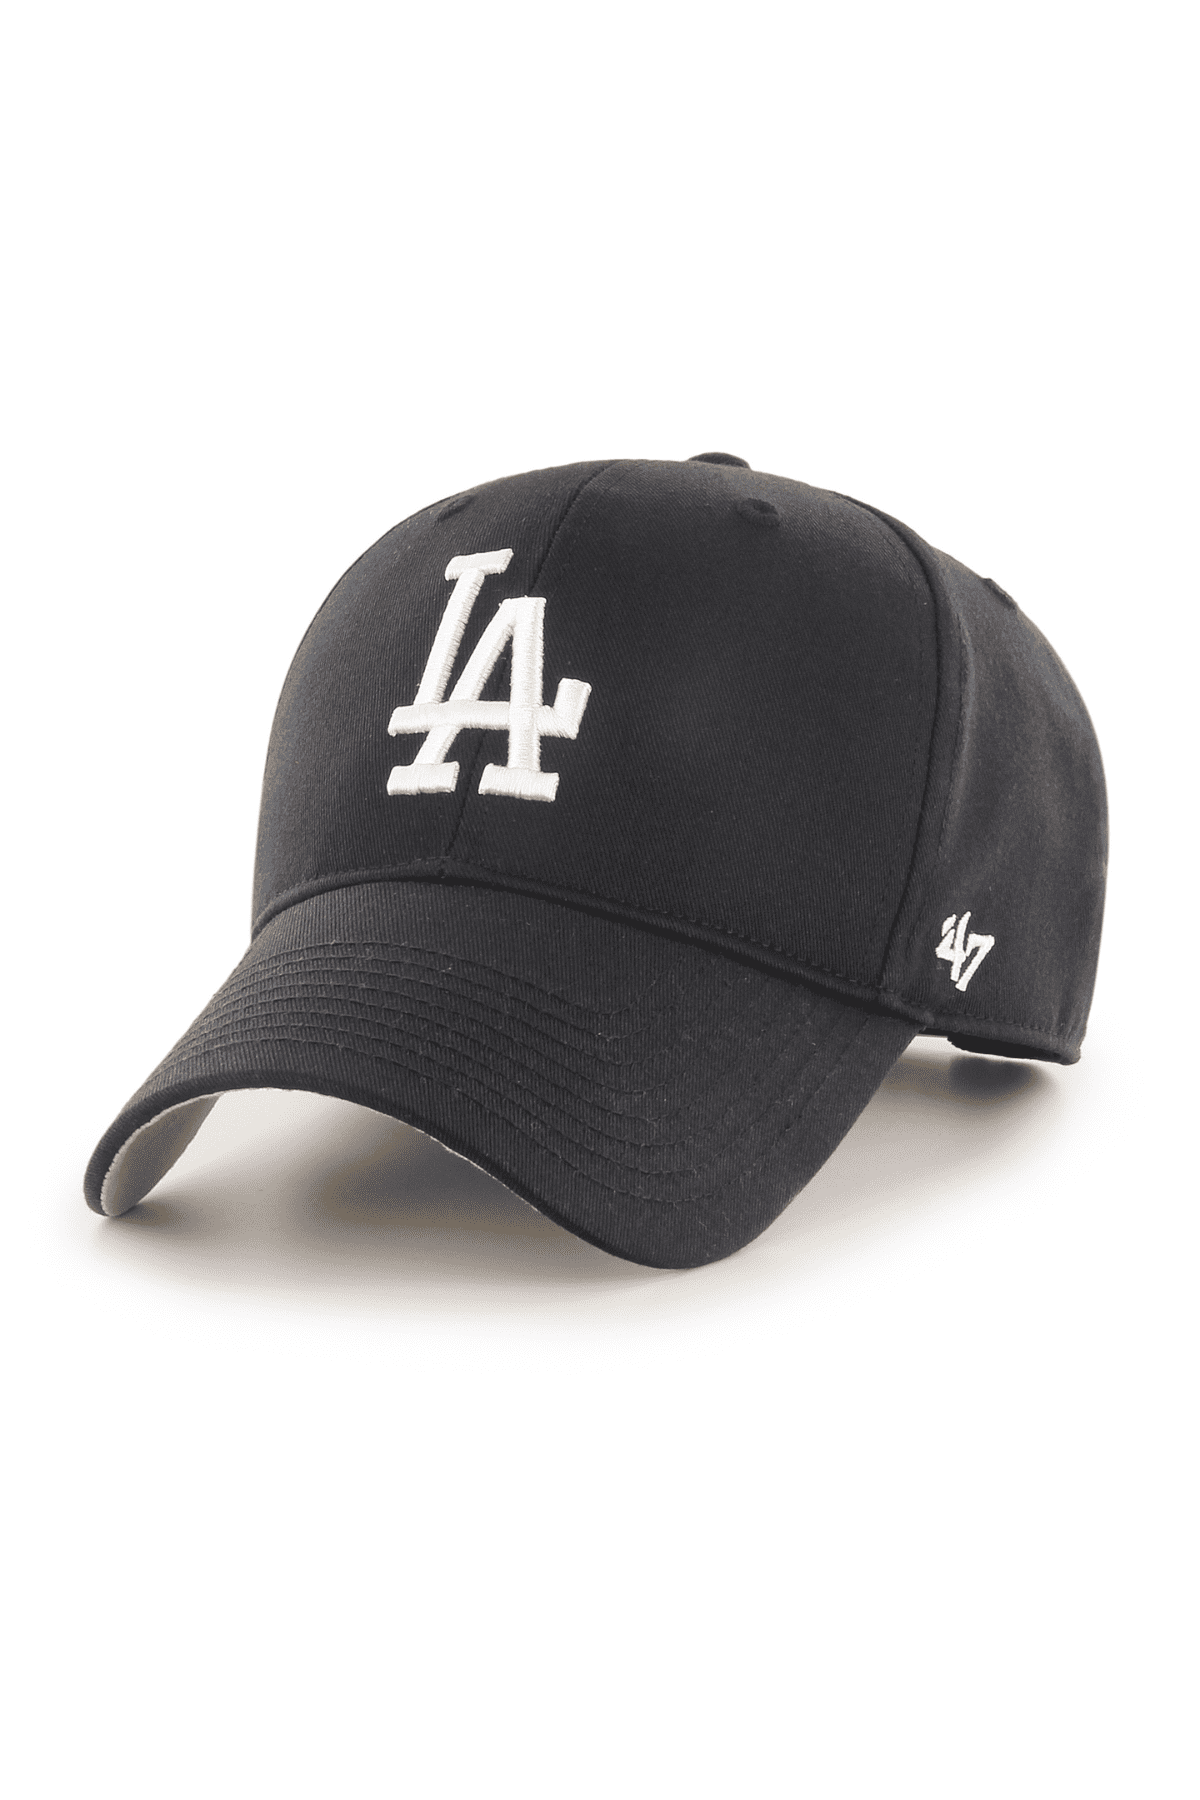 כובע מצחייה 47 MVP עם הדפס LA Los Angeles Dodgers שחור-47-One size-נאקו